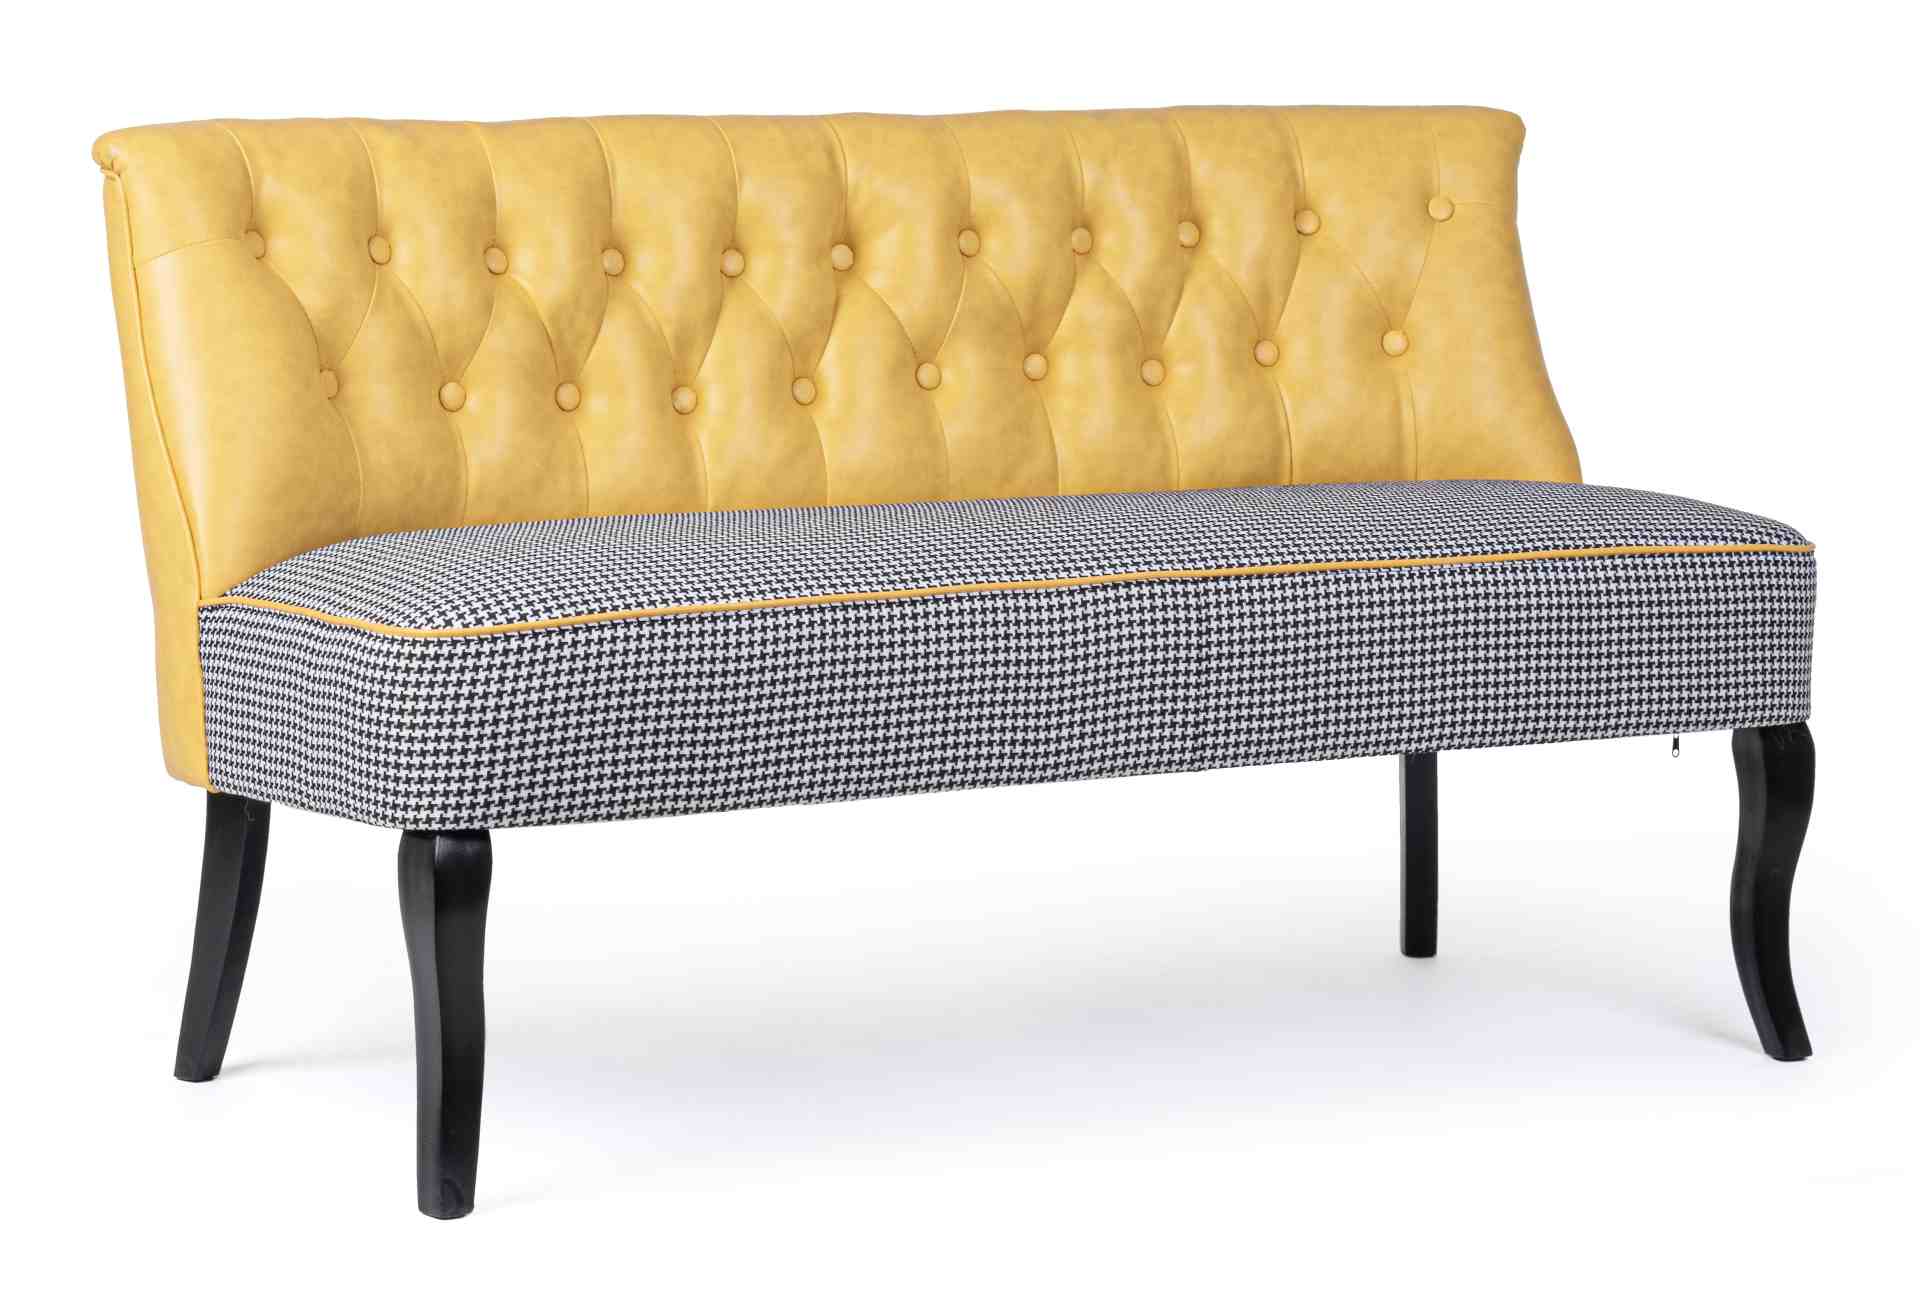 Das Sofa Batilda überzeugt mit seinem klassischen Design. Gefertigt wurde es aus Kunstleder, welches einen gelben Farbton besitzt. Das Gestell ist aus Kiefernholz und hat eine schwarze Farbe. Das Sofa ist in der Ausführung als 2-Sitzer. Die Breite beträgt